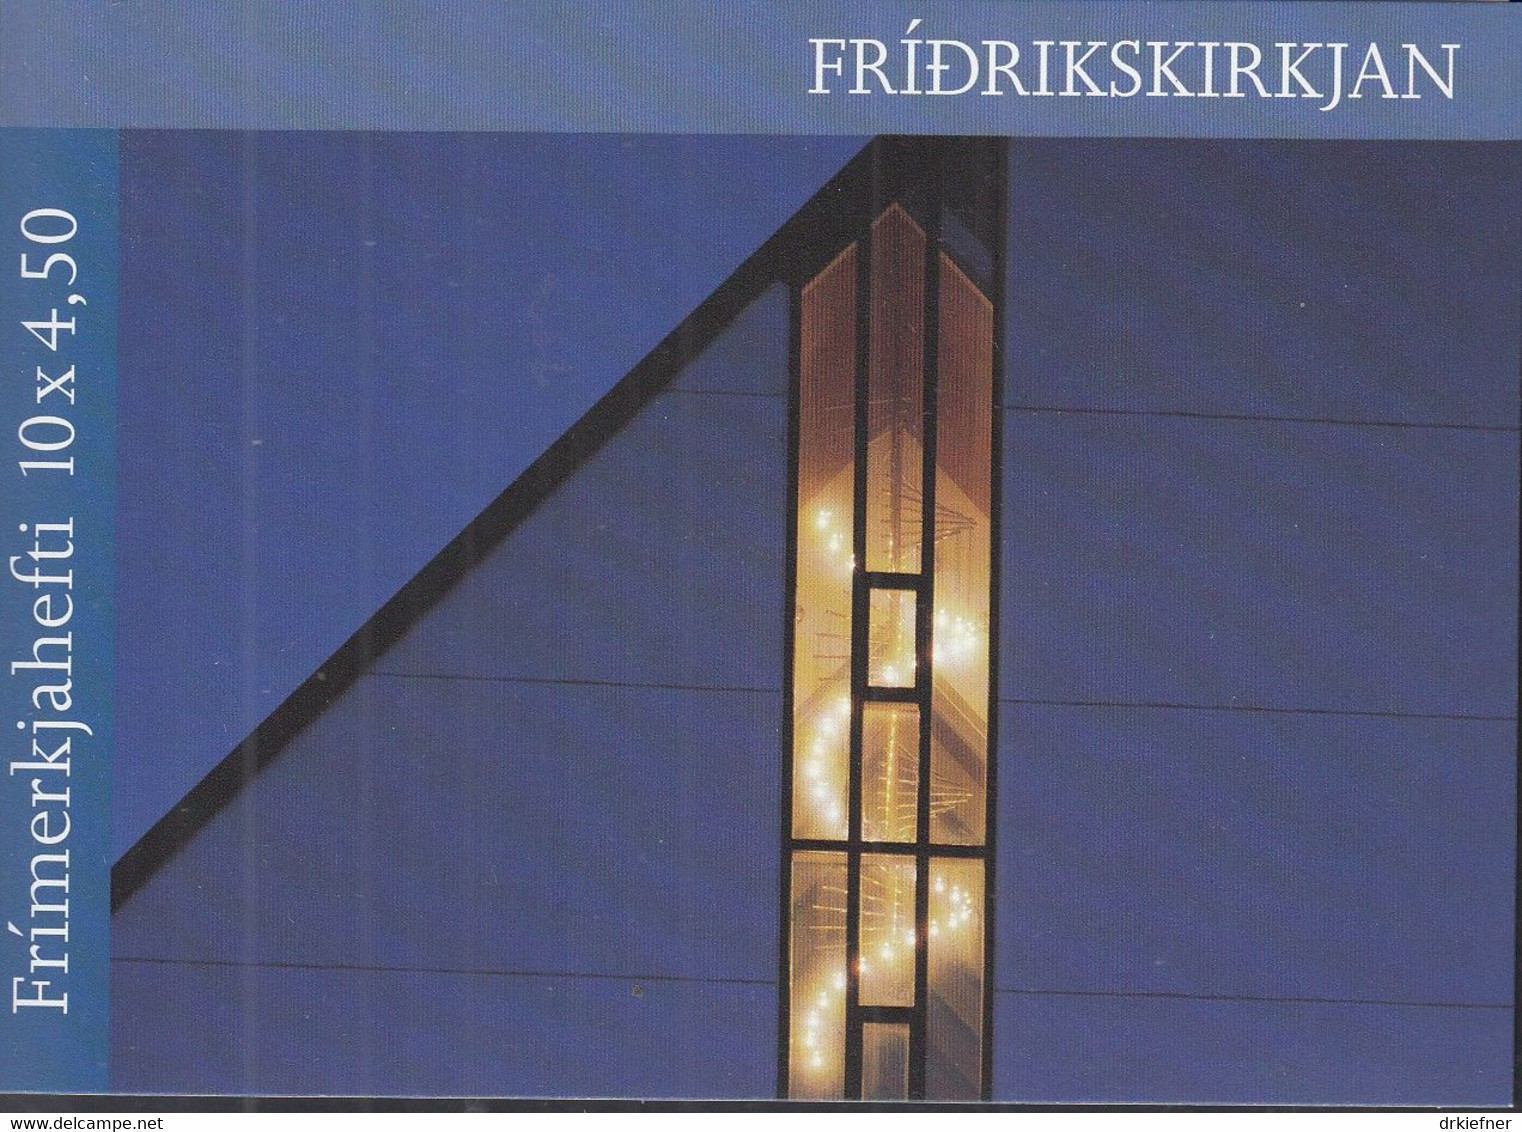 FÄRÖER Markenheftchen MH 16, 5x 345-346, Postfrisch **, Frederikskirche, 1998 - Féroé (Iles)